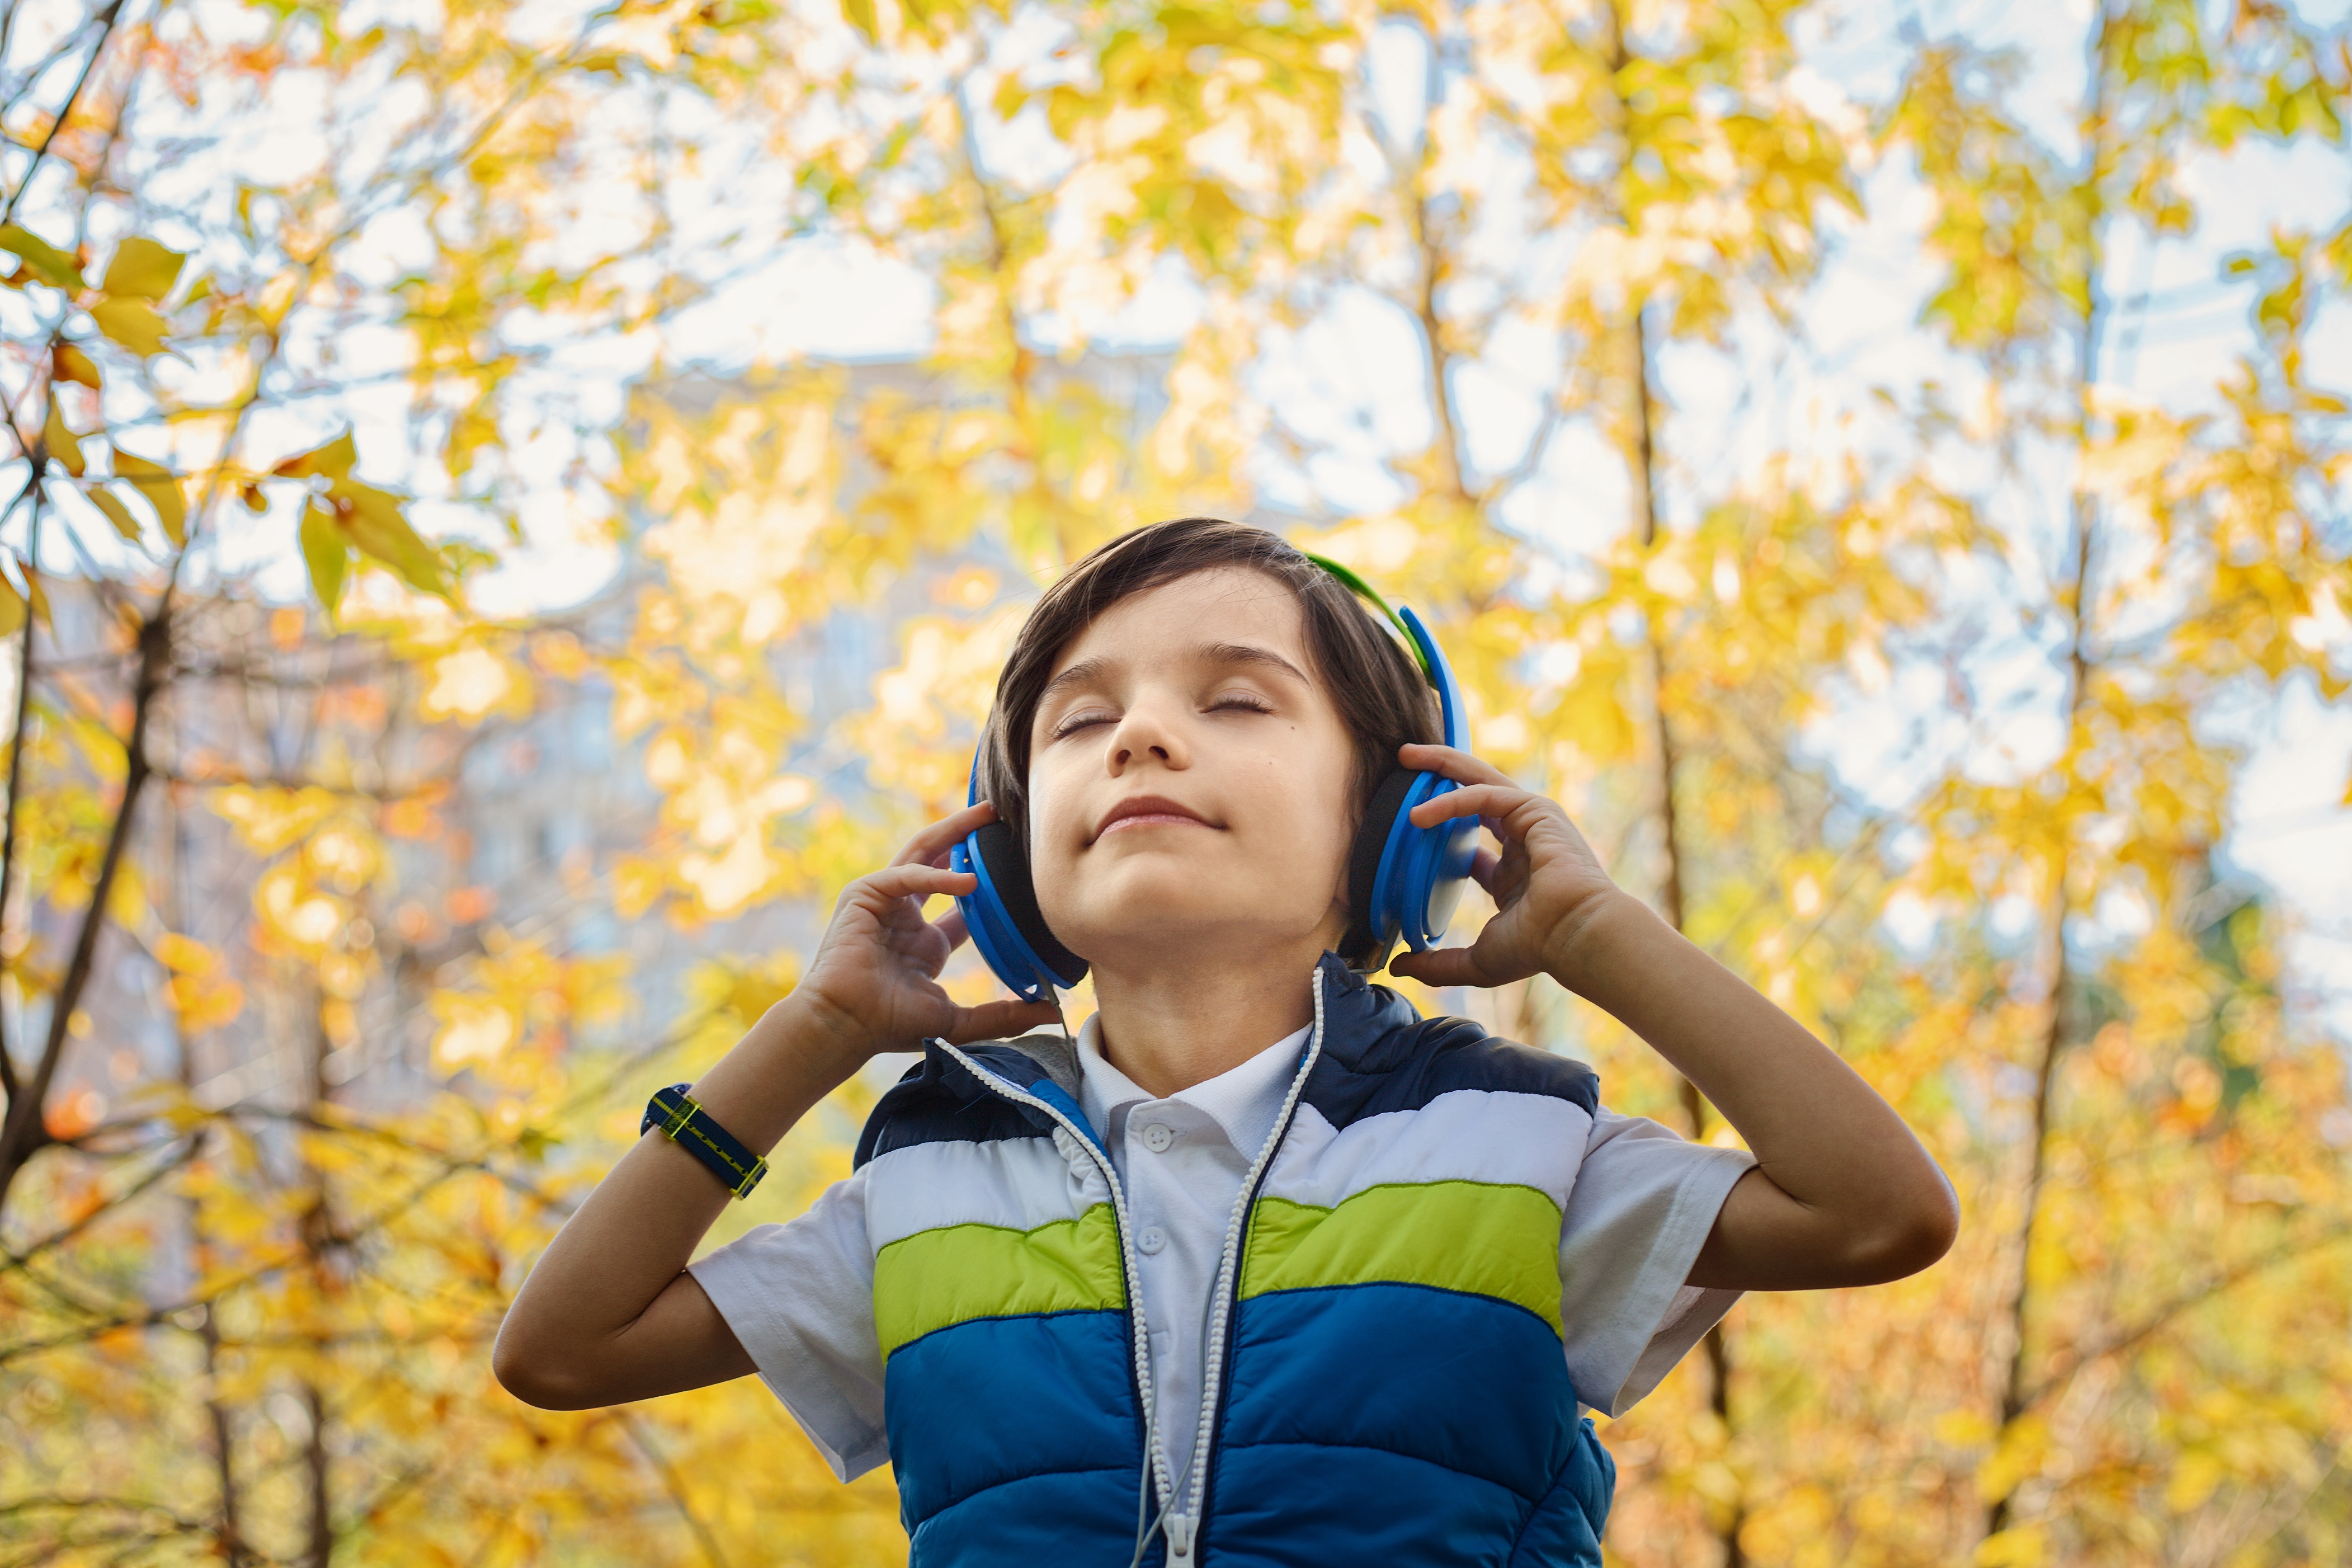 La música en la vida de los niños – El impacto de la música en el desarrollo infantil